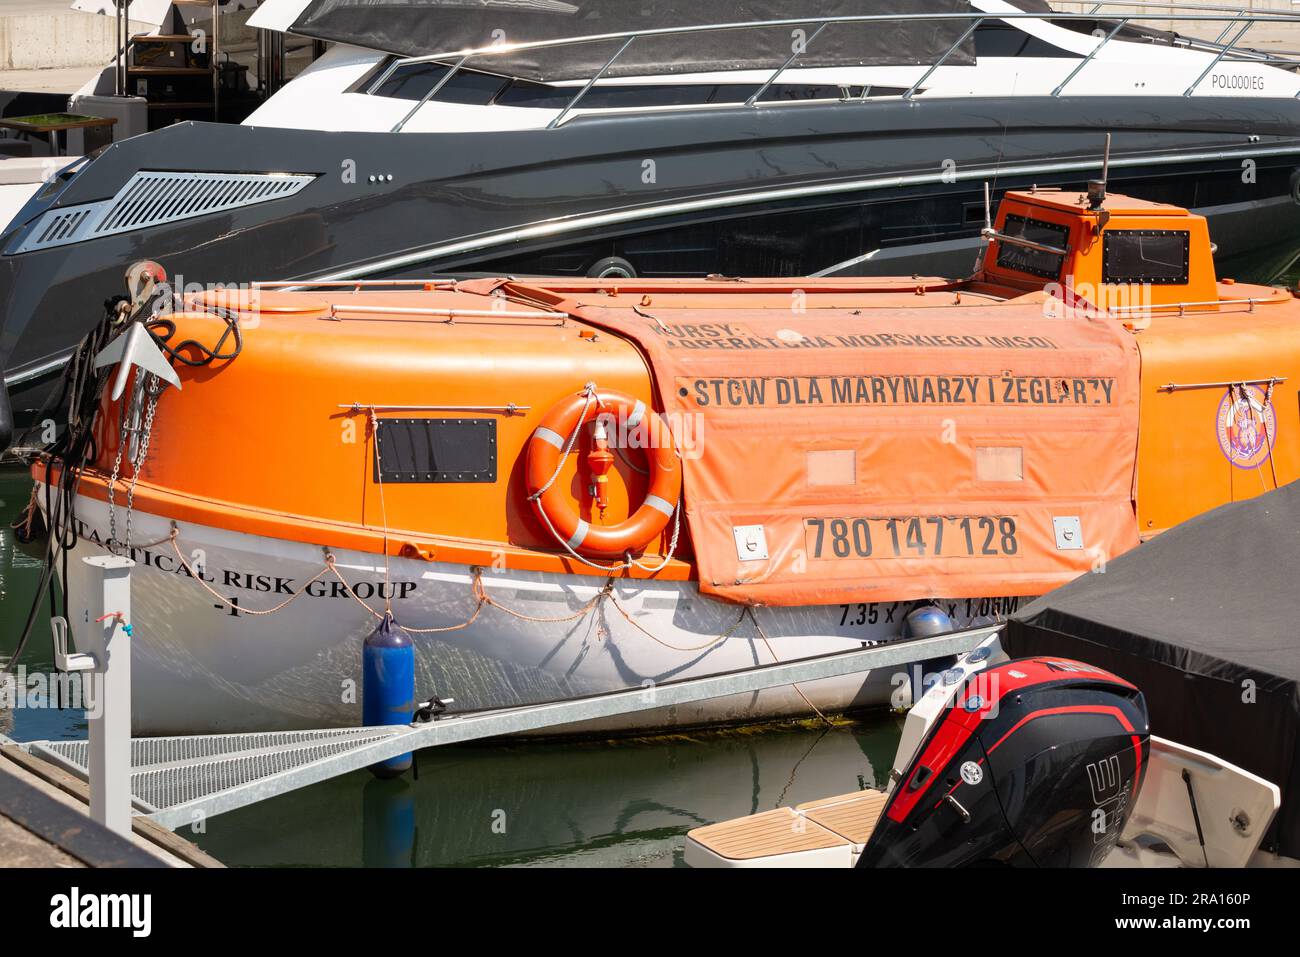 Gruppo tattico di rischio: Scialuppa di salvataggio arancione o barca di salvataggio tra gli yacht del Marina Yacht Park di Gdynia, Polonia, Europa, UE Foto Stock